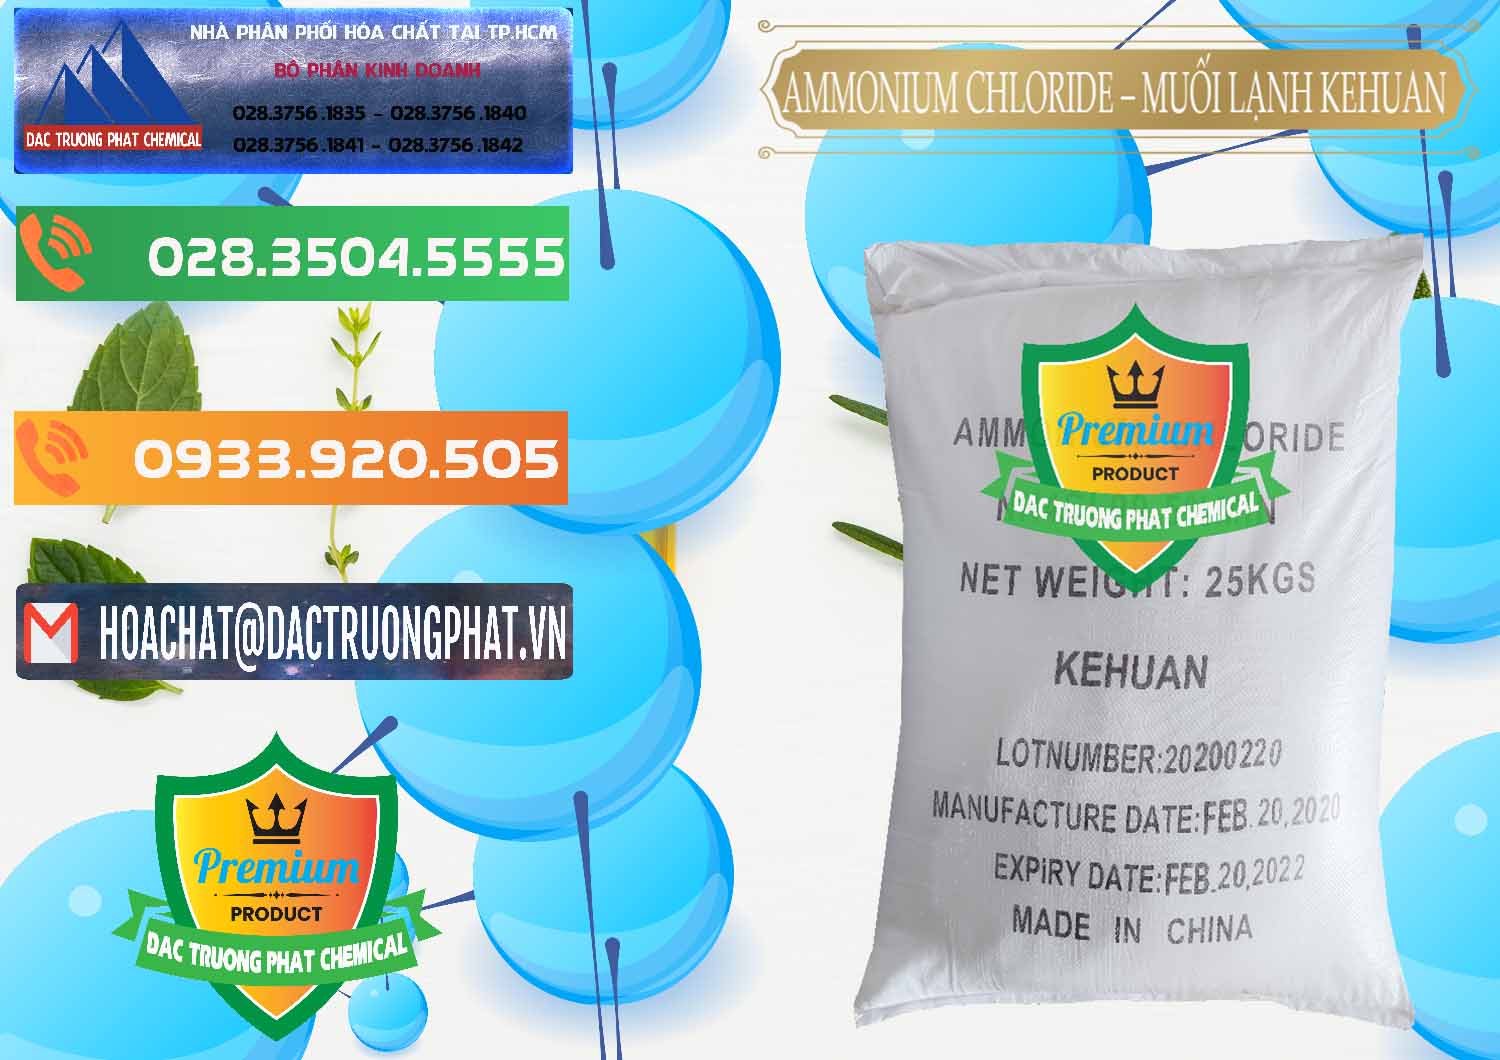 Nhập khẩu - bán Ammonium Chloride – NH4CL Muối Lạnh Kehuan Trung Quốc China - 0022 - Công ty chuyên cung cấp _ kinh doanh hóa chất tại TP.HCM - hoachatxulynuoc.com.vn